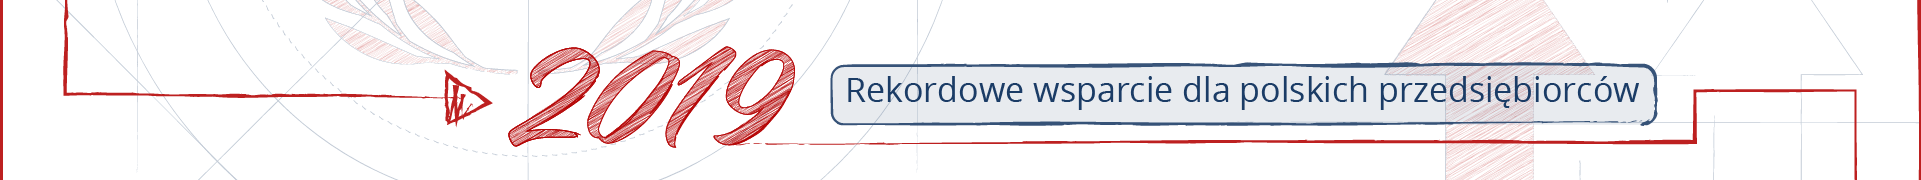 Fragment osi czasu. Ozdobny napis 2019, obok ramka z napisem „Rekordowe wsparcie dla polskich przedsiębiorców”.